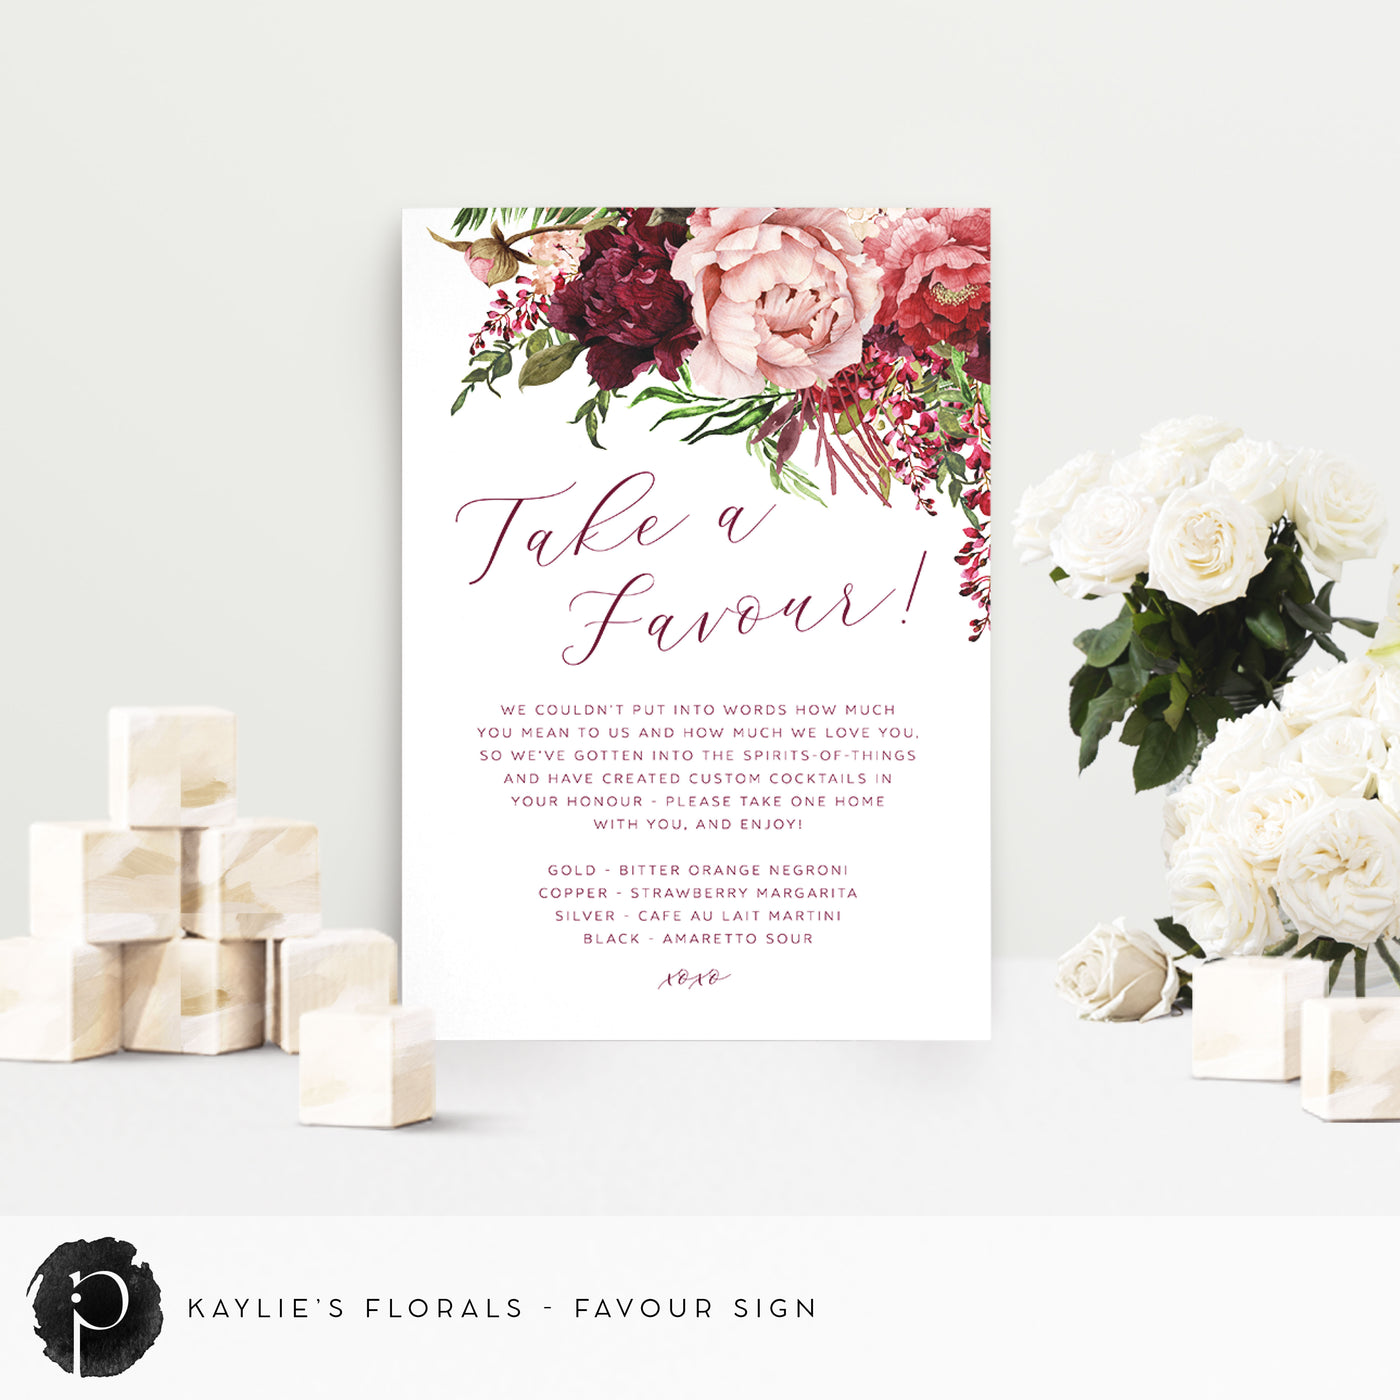 Kaylie's Florals - Wedding Guest Favour, Bonbonniere Table Sign